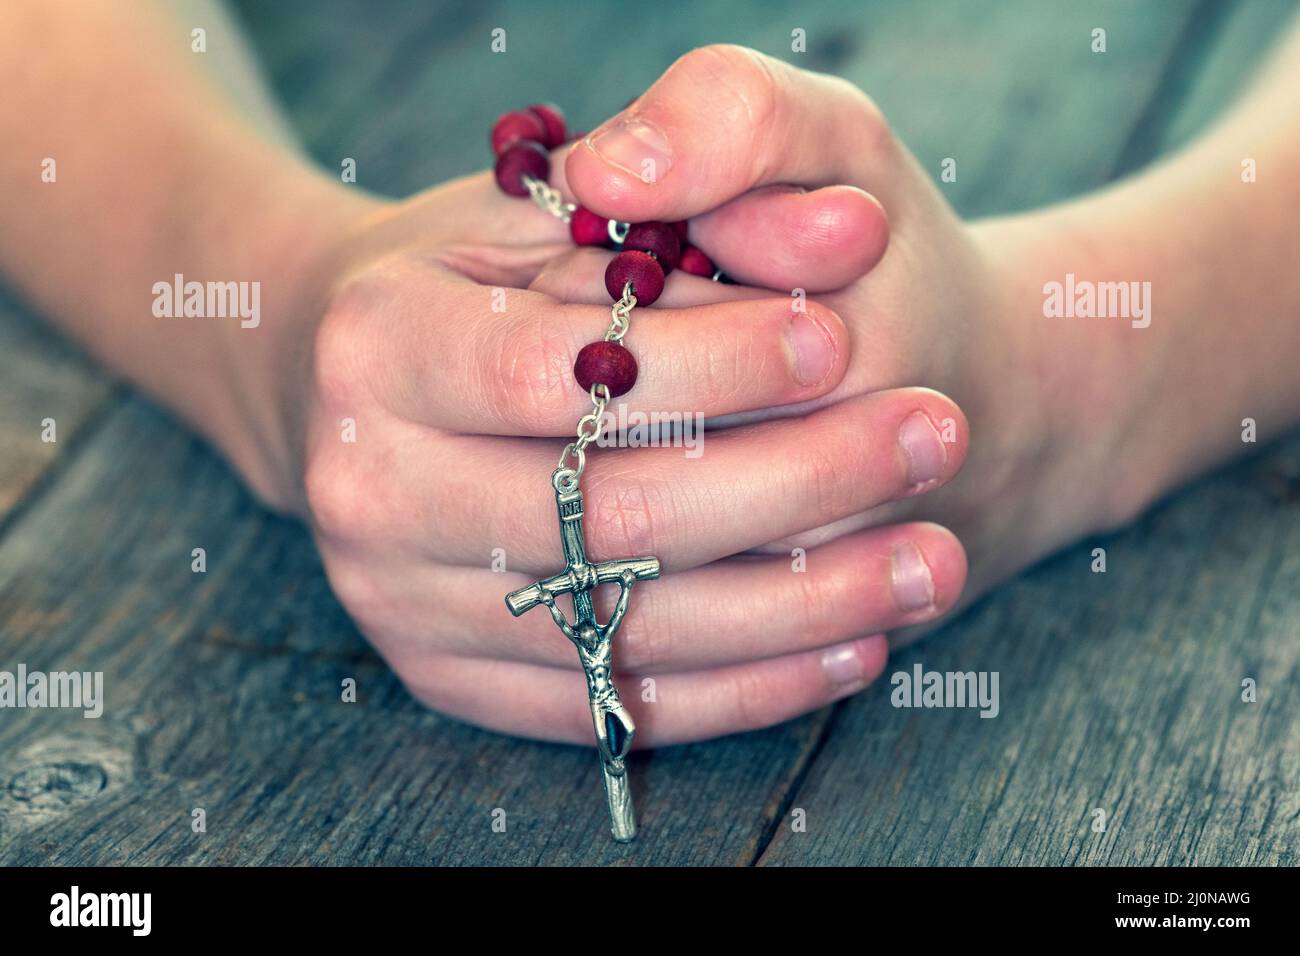 Rosario cattolico immagini e fotografie stock ad alta risoluzione - Alamy